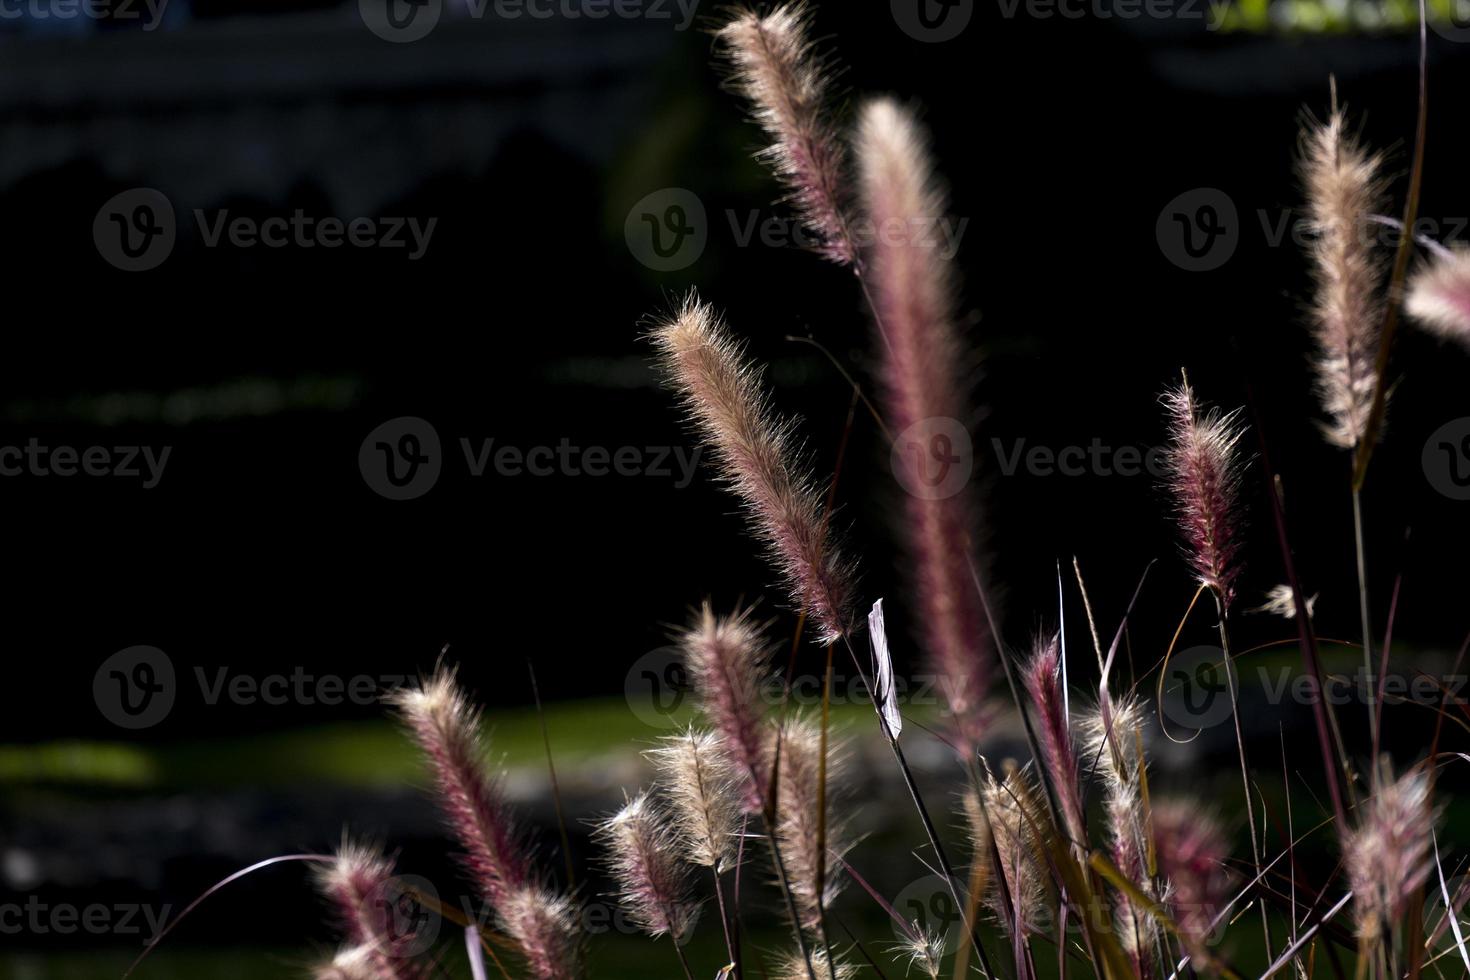 messa a fuoco selettiva astratto rotolo di erba con sfondo di colore nero chiaro dorato nel parco naturale foto